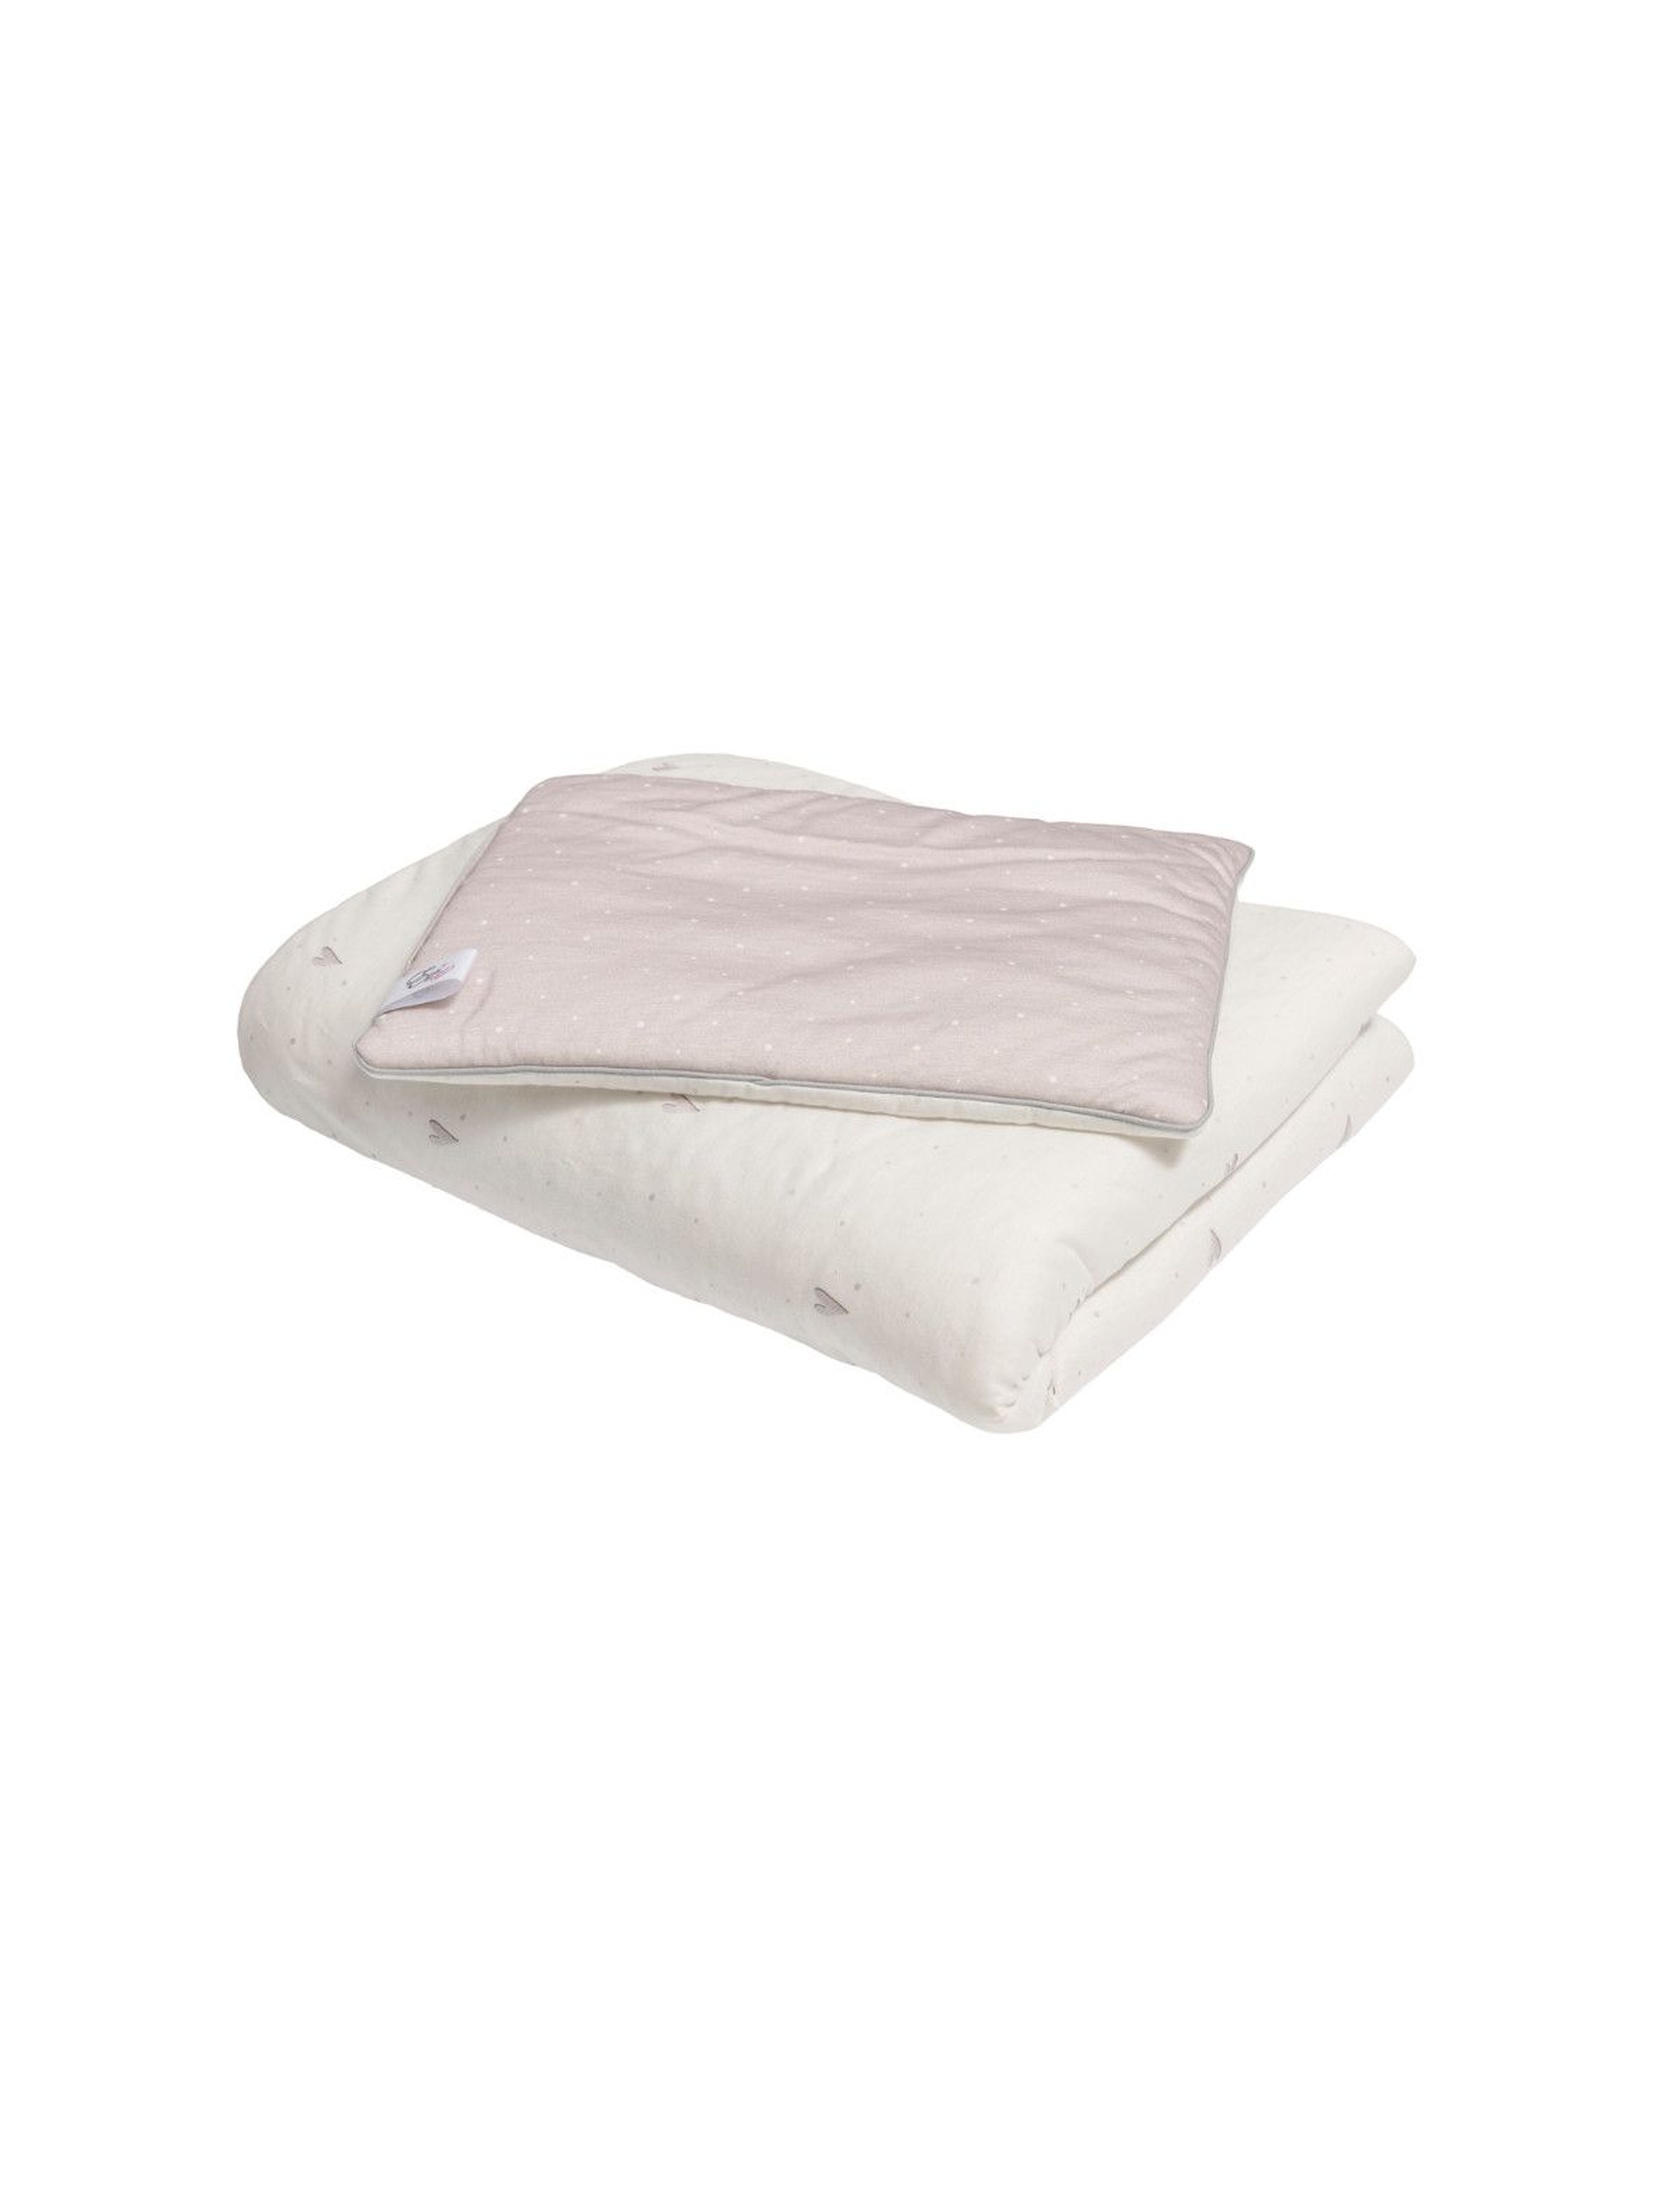 Pościel z wypełnieniem Biała w różowe serduszka - 100% bawełny jersey by Małgosia Socha 80x100